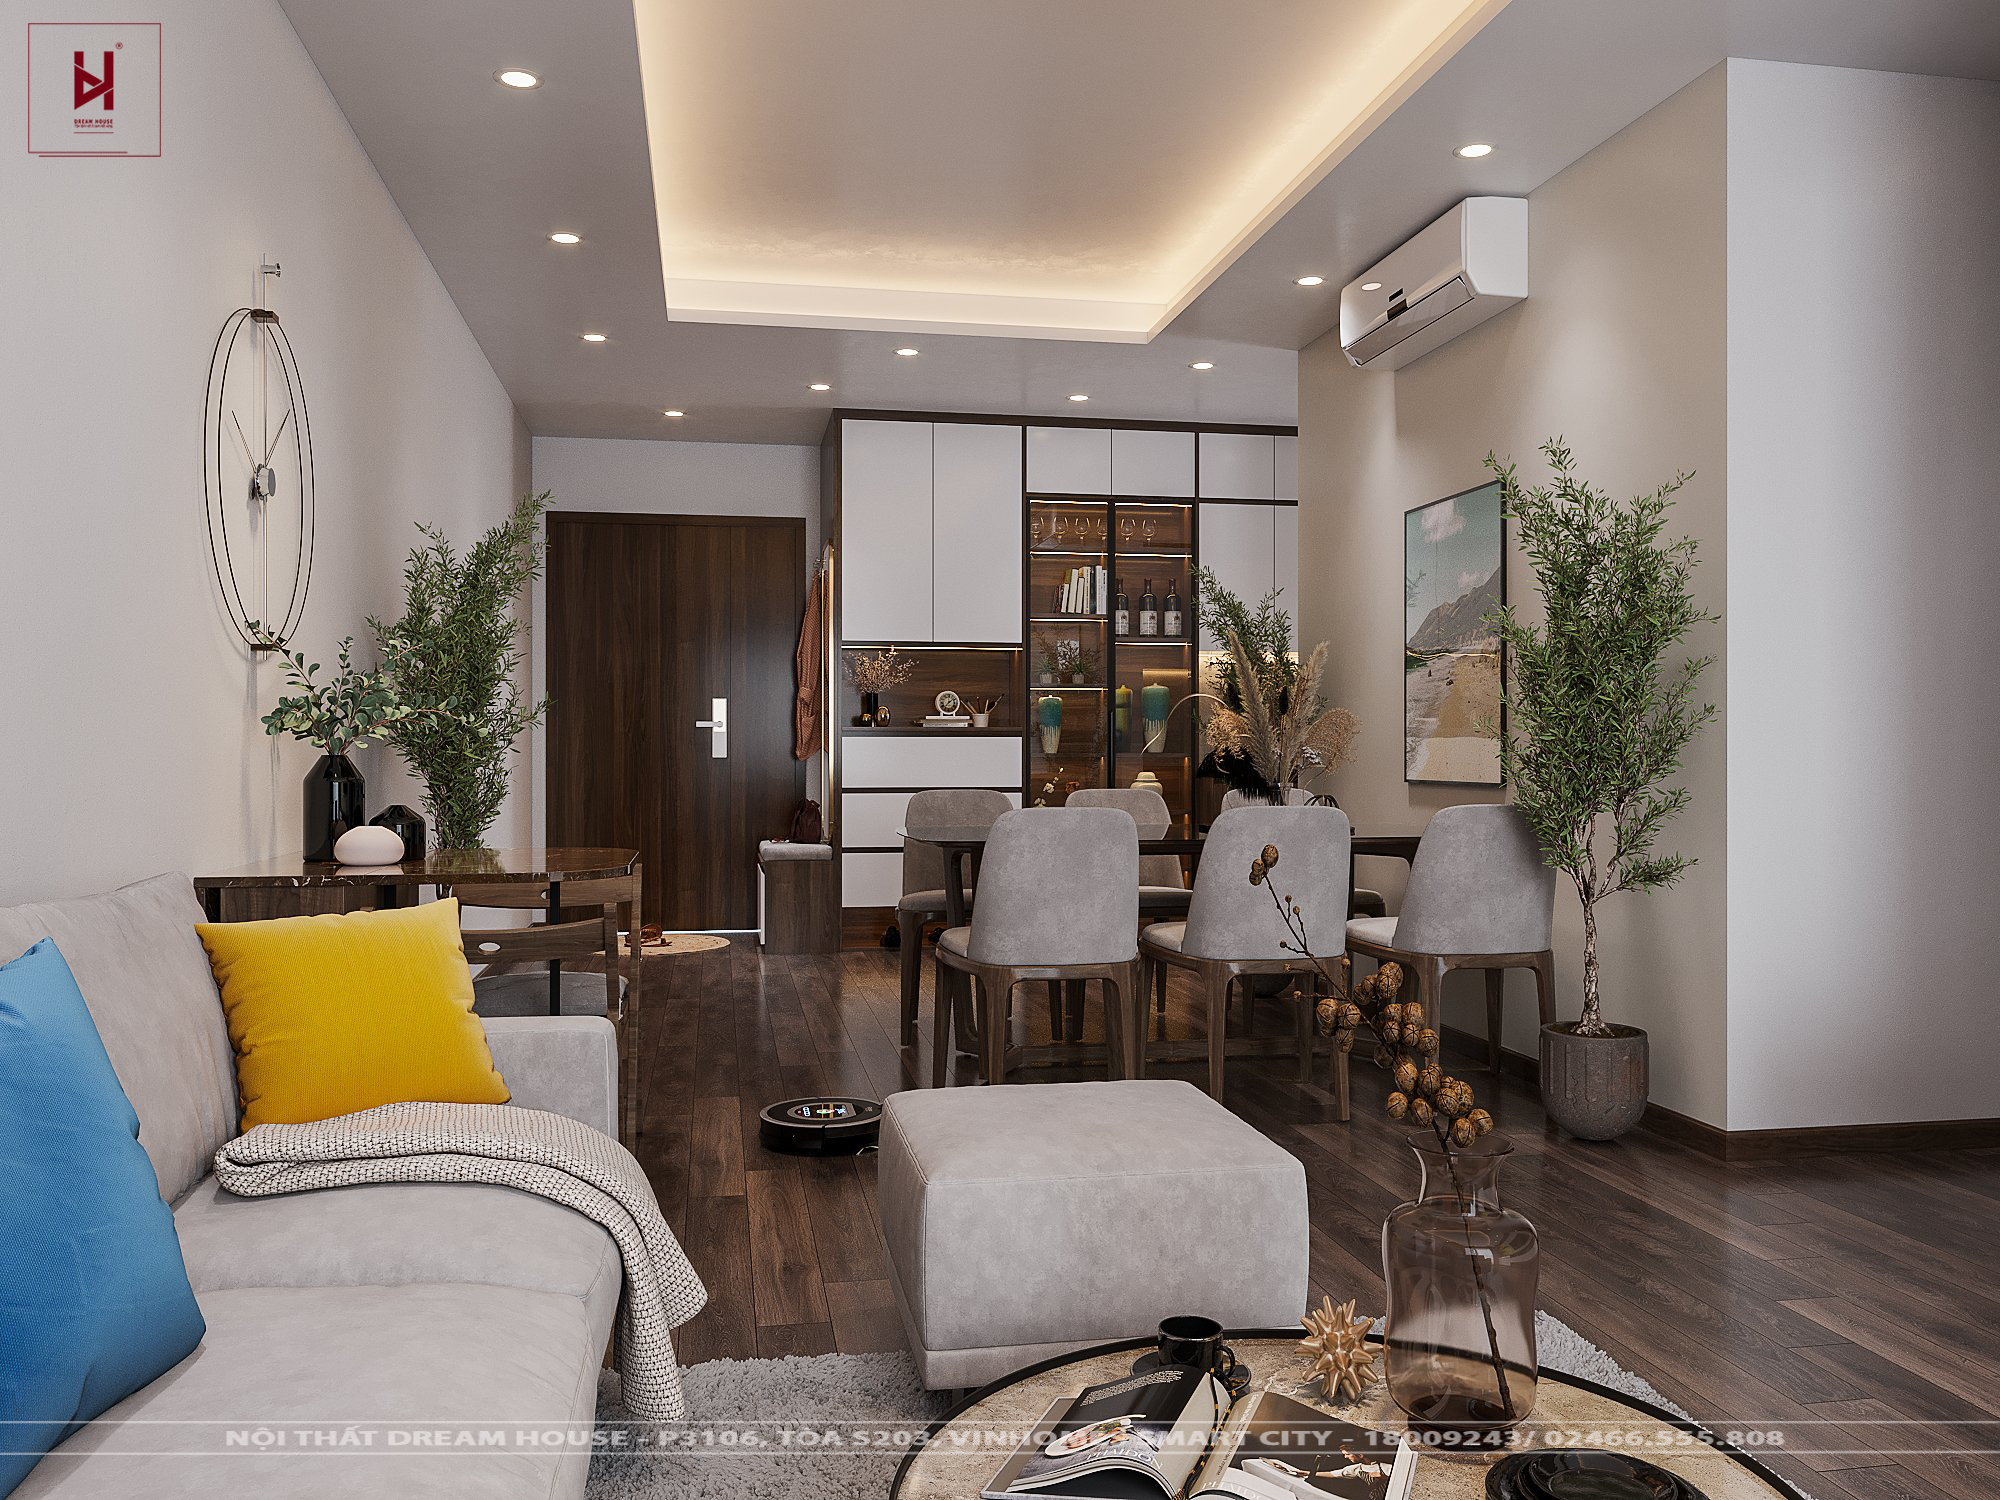 Một trong những điều quan trọng nhất đối với một căn hộ chung cư là sự tiện nghi và vẻ đẹp của nội thất. Cùng chiêm ngưỡng sự kết hợp tinh tế giữa công năng và thẩm mỹ trong thiết kế nội thất chung cư Ngoại Giao Đoàn này. Nó sẽ khiến bạn muốn sống trong không gian đẹp như thế.